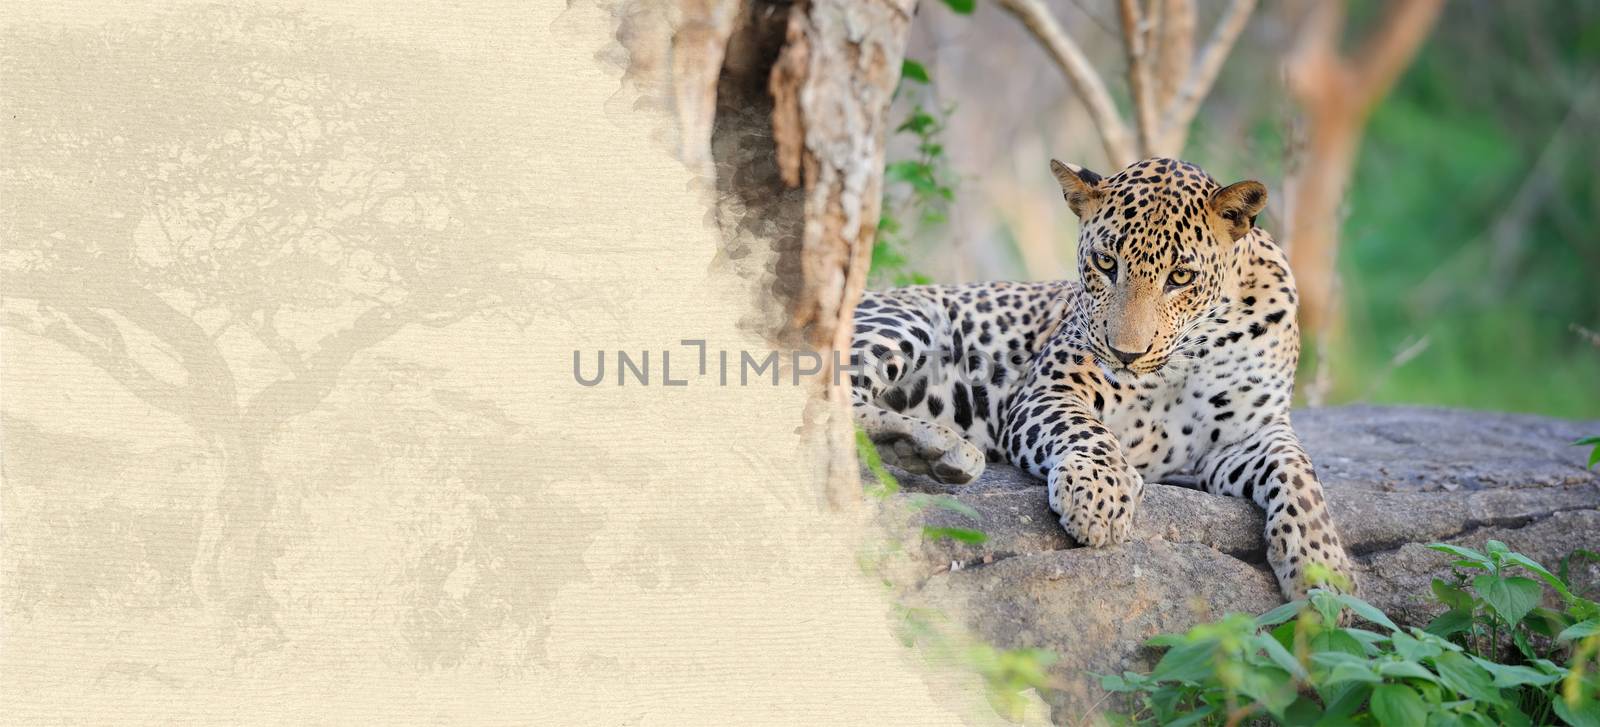 Leopard on textured paper by byrdyak